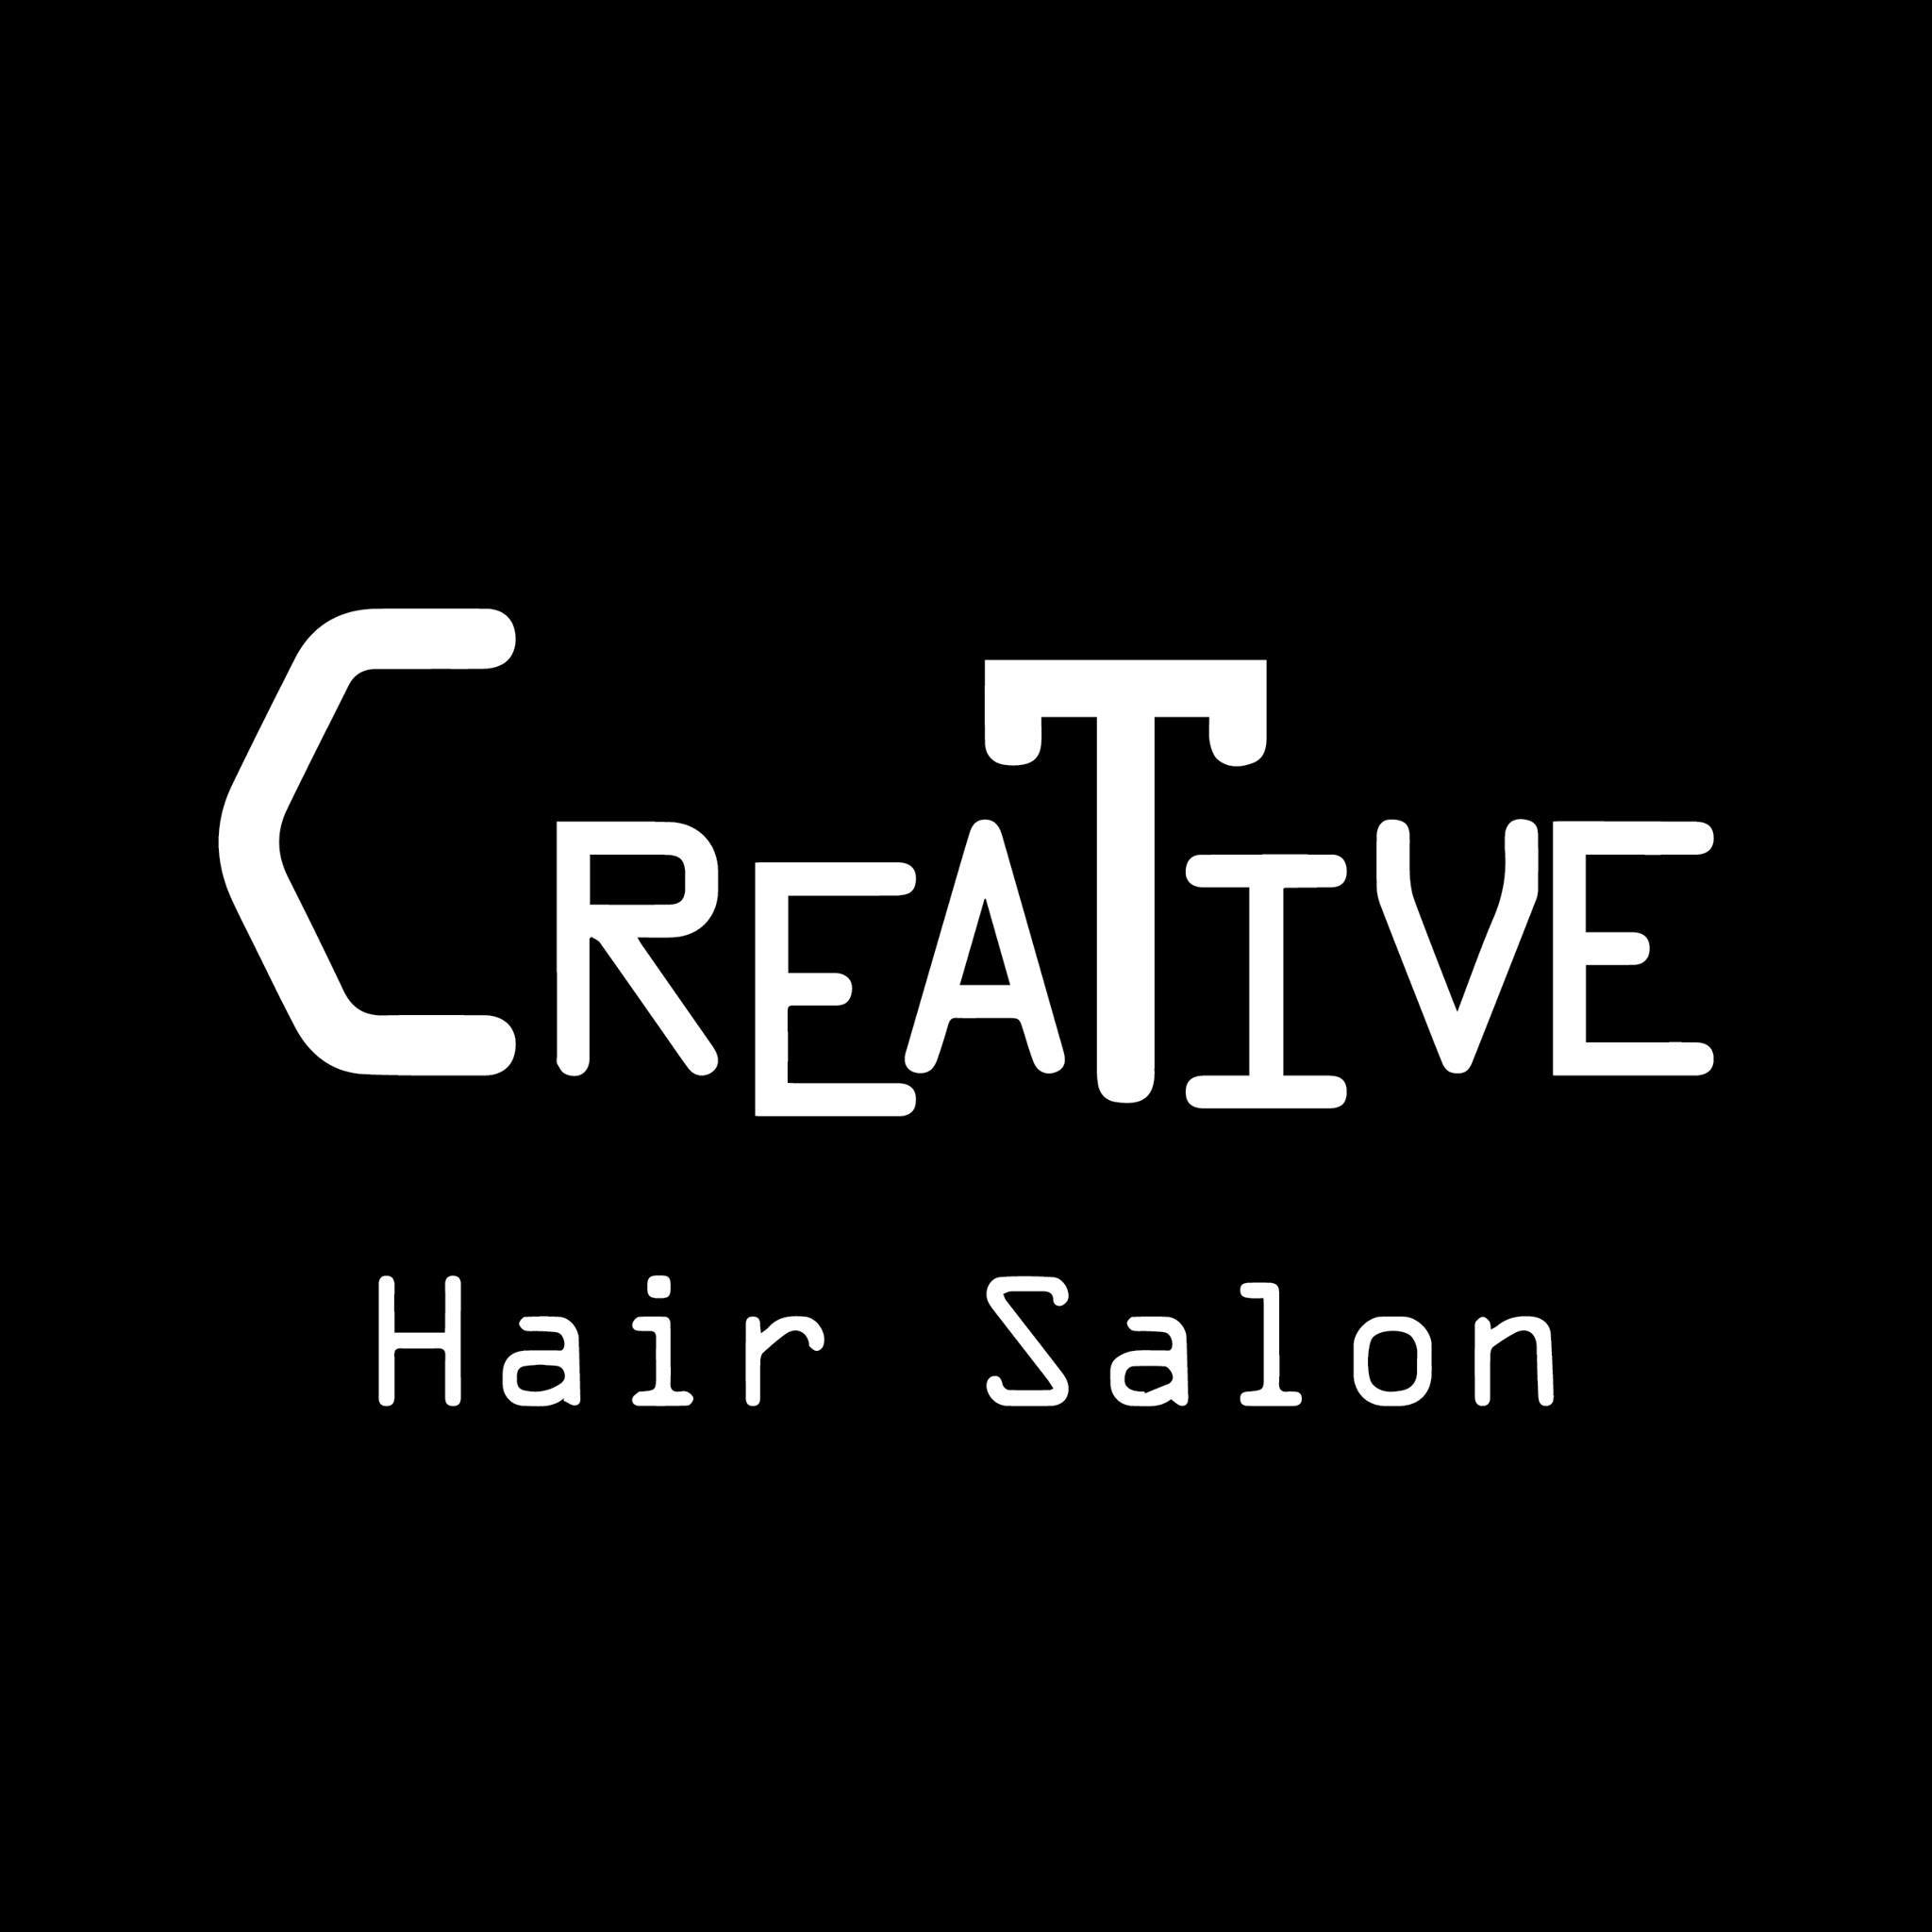 髮型屋 Salon: Creative Hair Salon